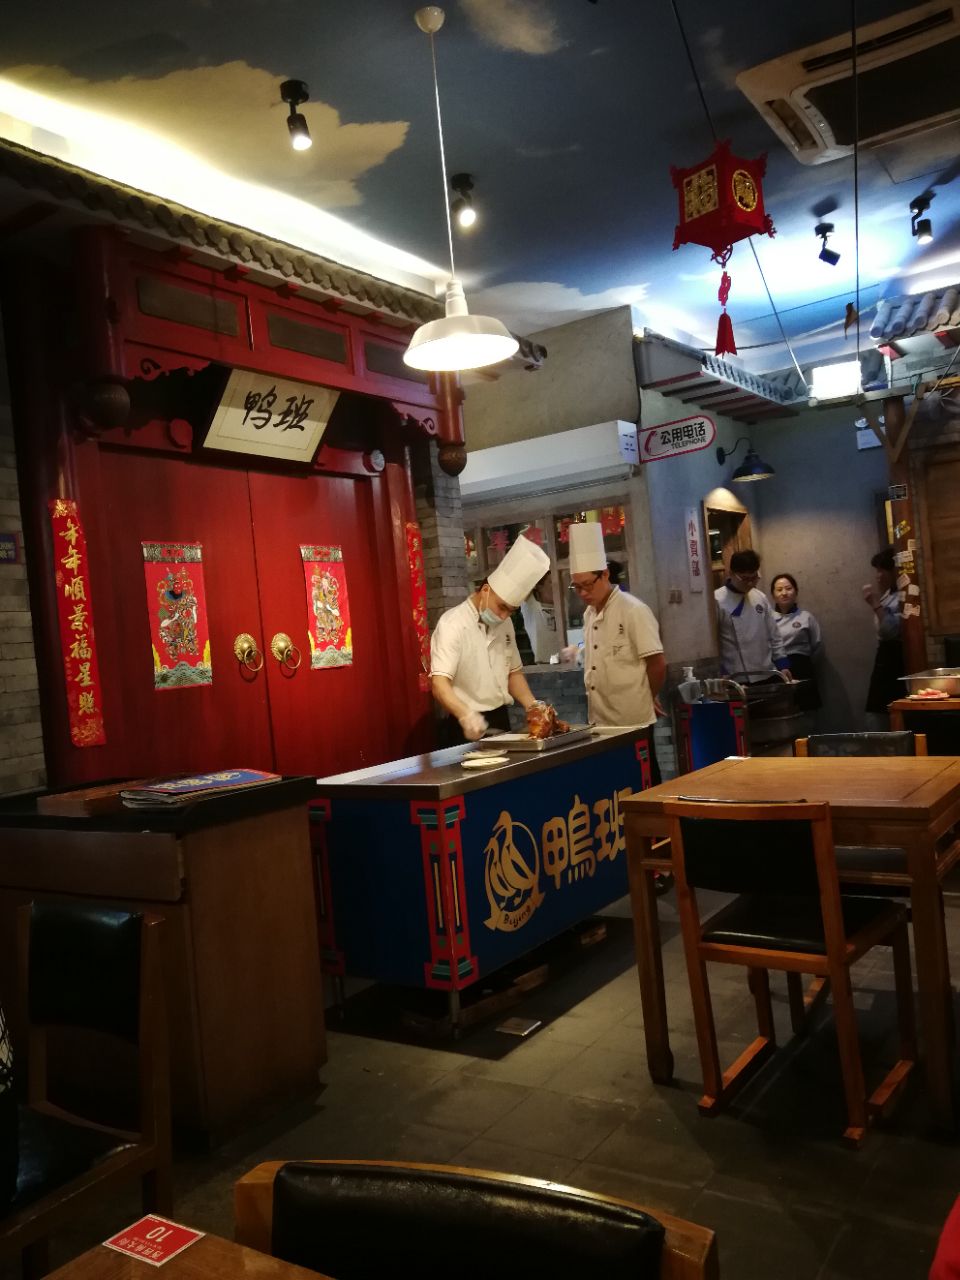 【携程美食林】北京鸭班(西单店)餐馆,挺有个性的烤鸭店,店不大,装修